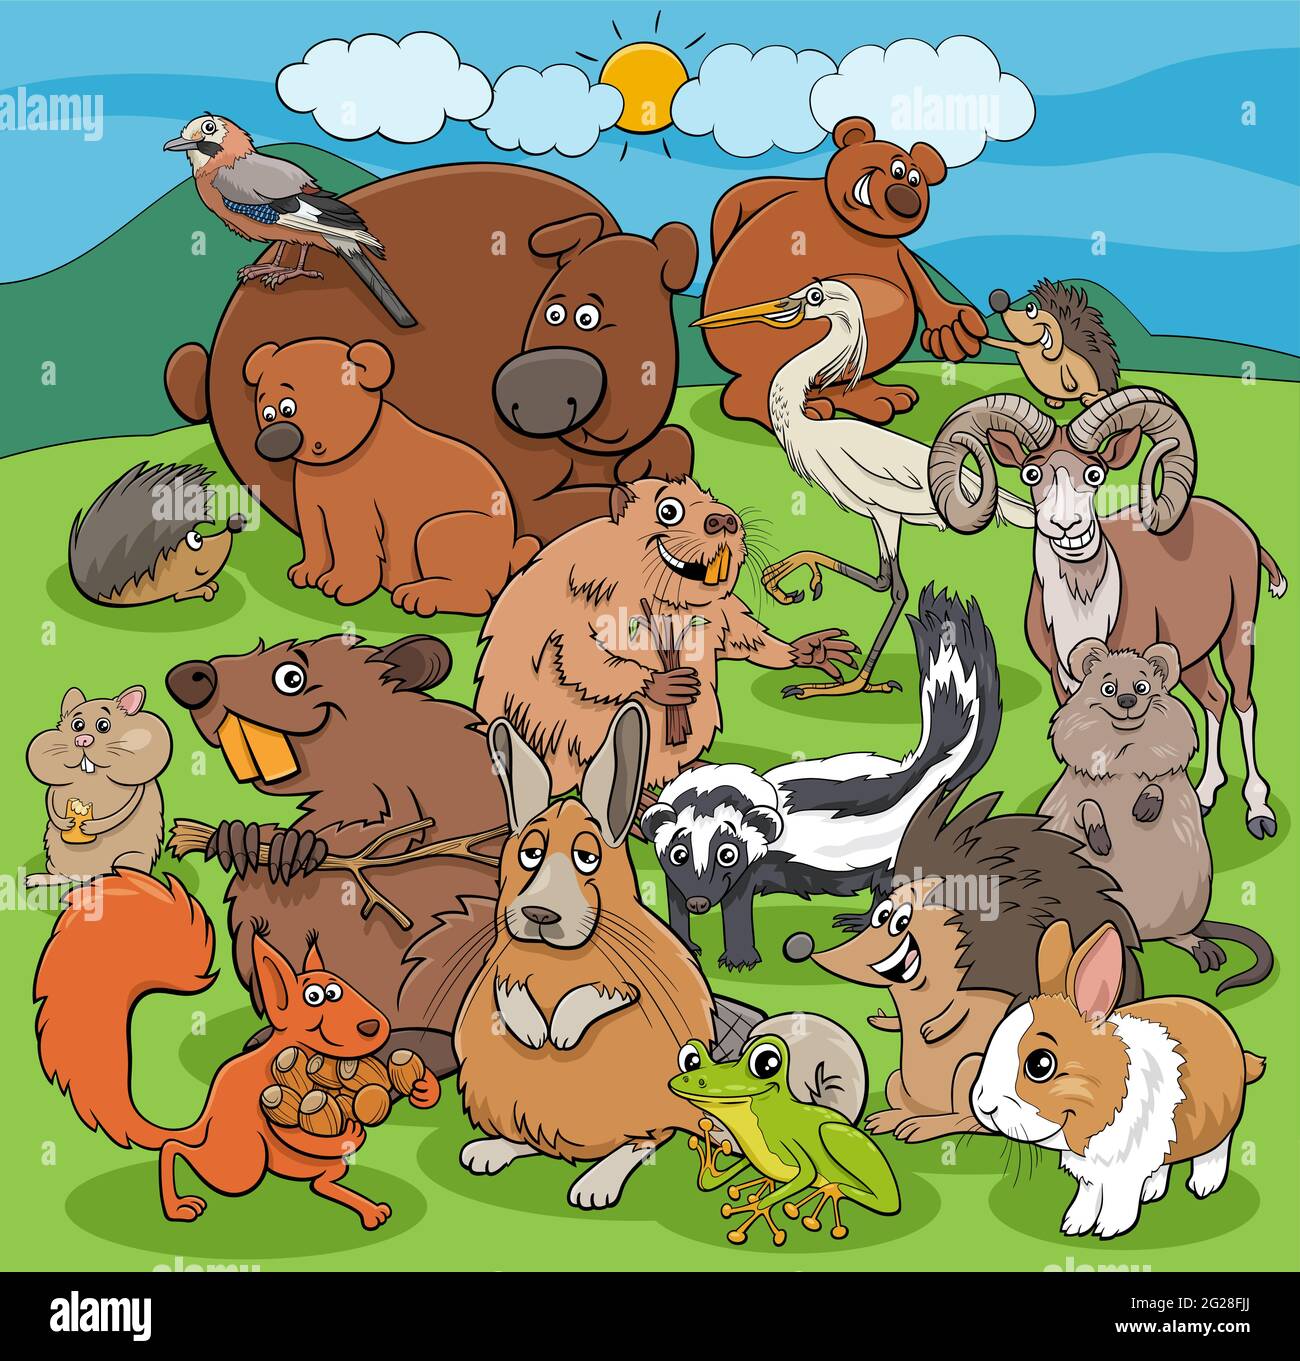 Cartoni animati illustrazioni di fumetti animali selvatici gruppo di  personaggi Immagine e Vettoriale - Alamy